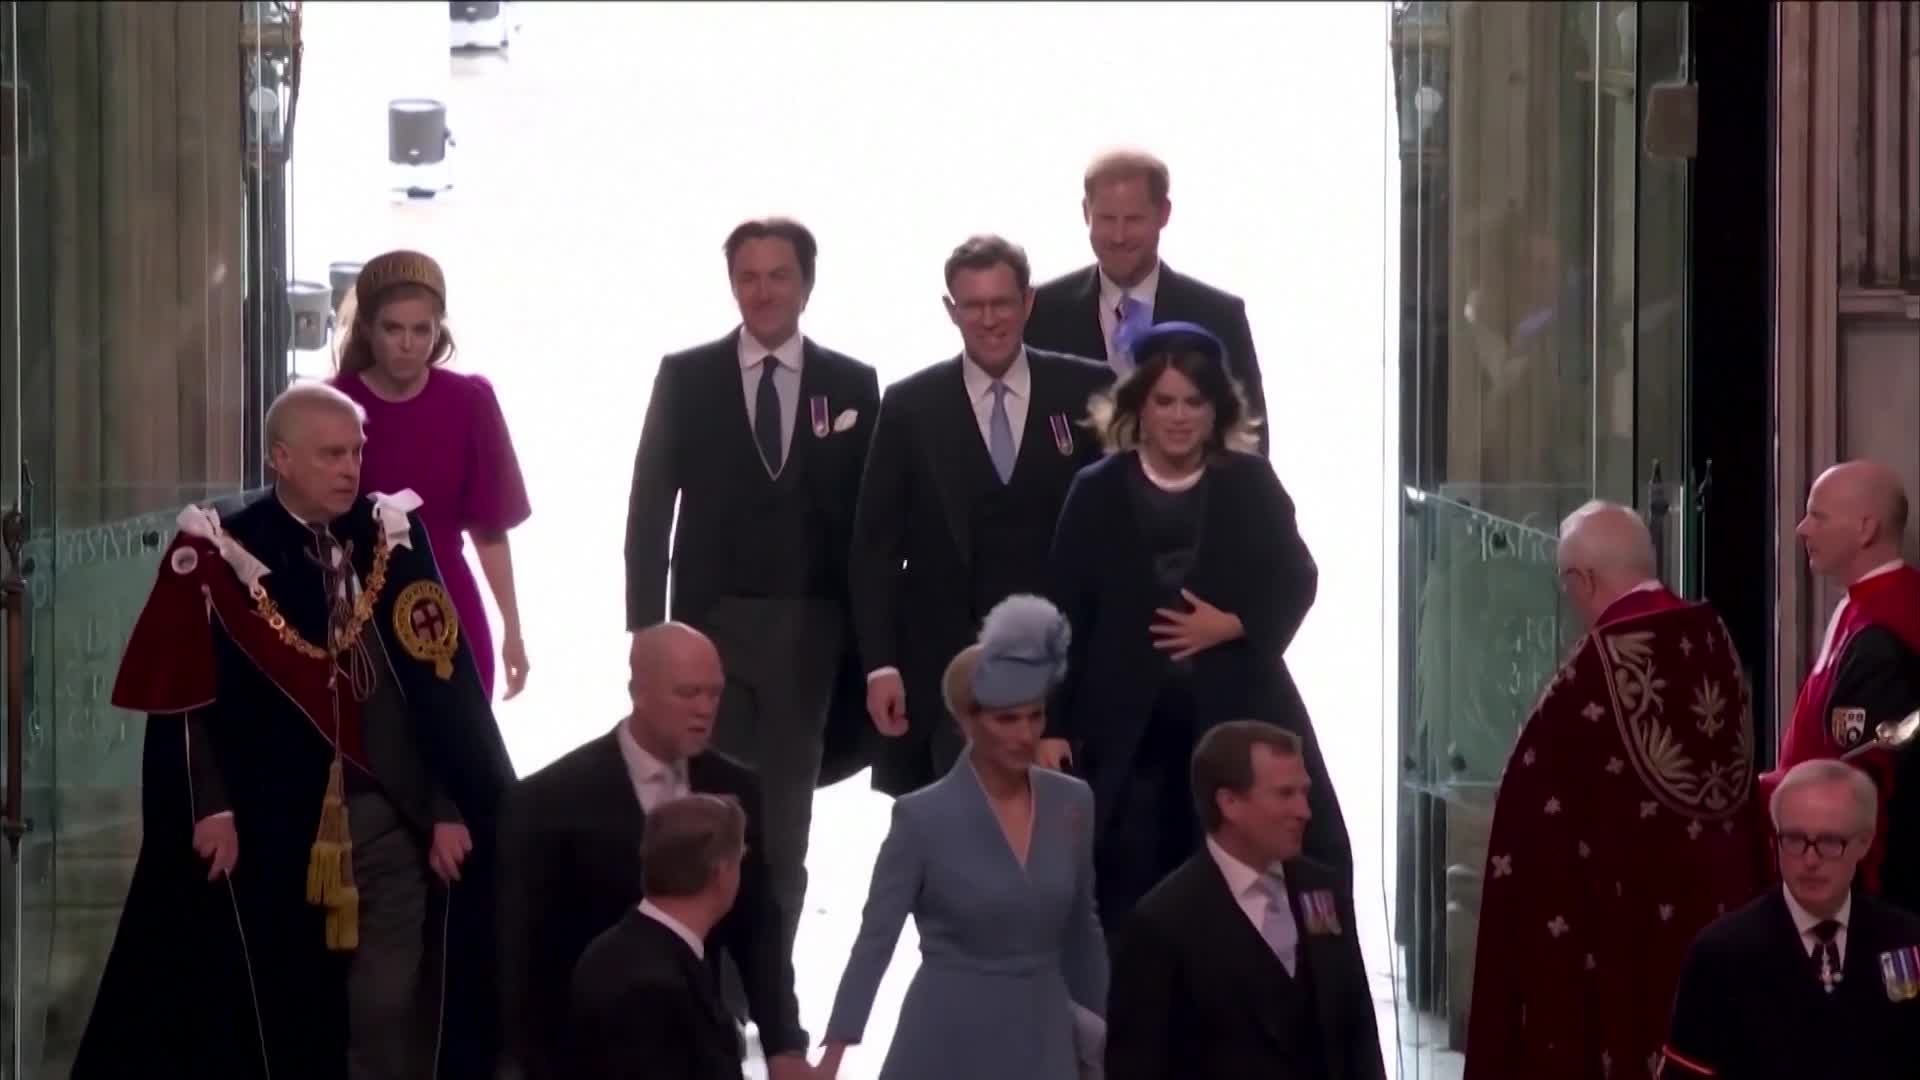 Príchod princa Harryho na korunováciu